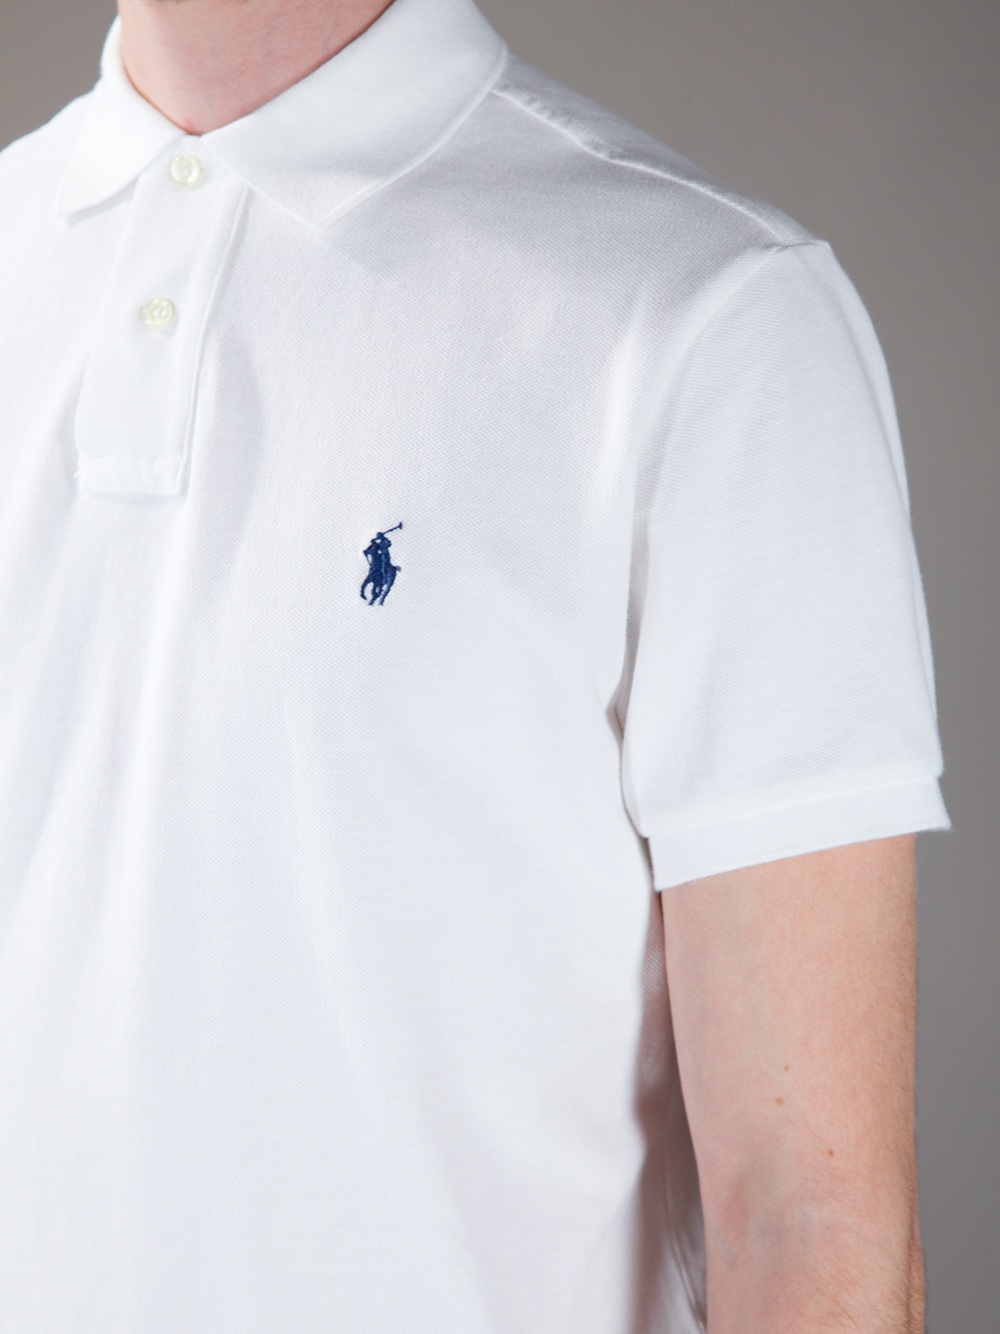 Polo Ralph Lauren Polo Shirt in White for Men - Lyst